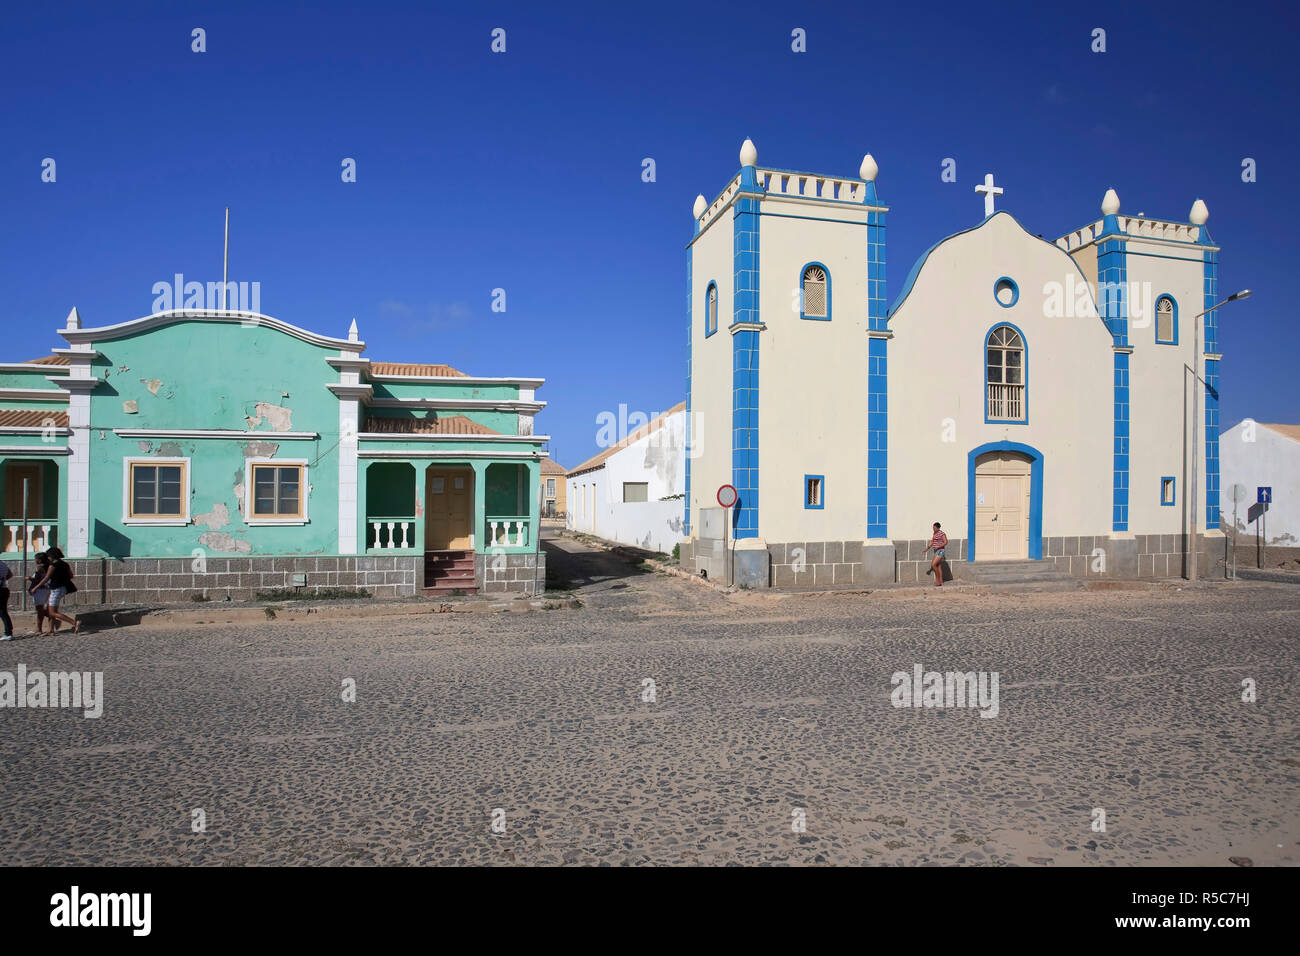 Kap Verde, Boavista, Stadt von Sal Rei. Stockfoto